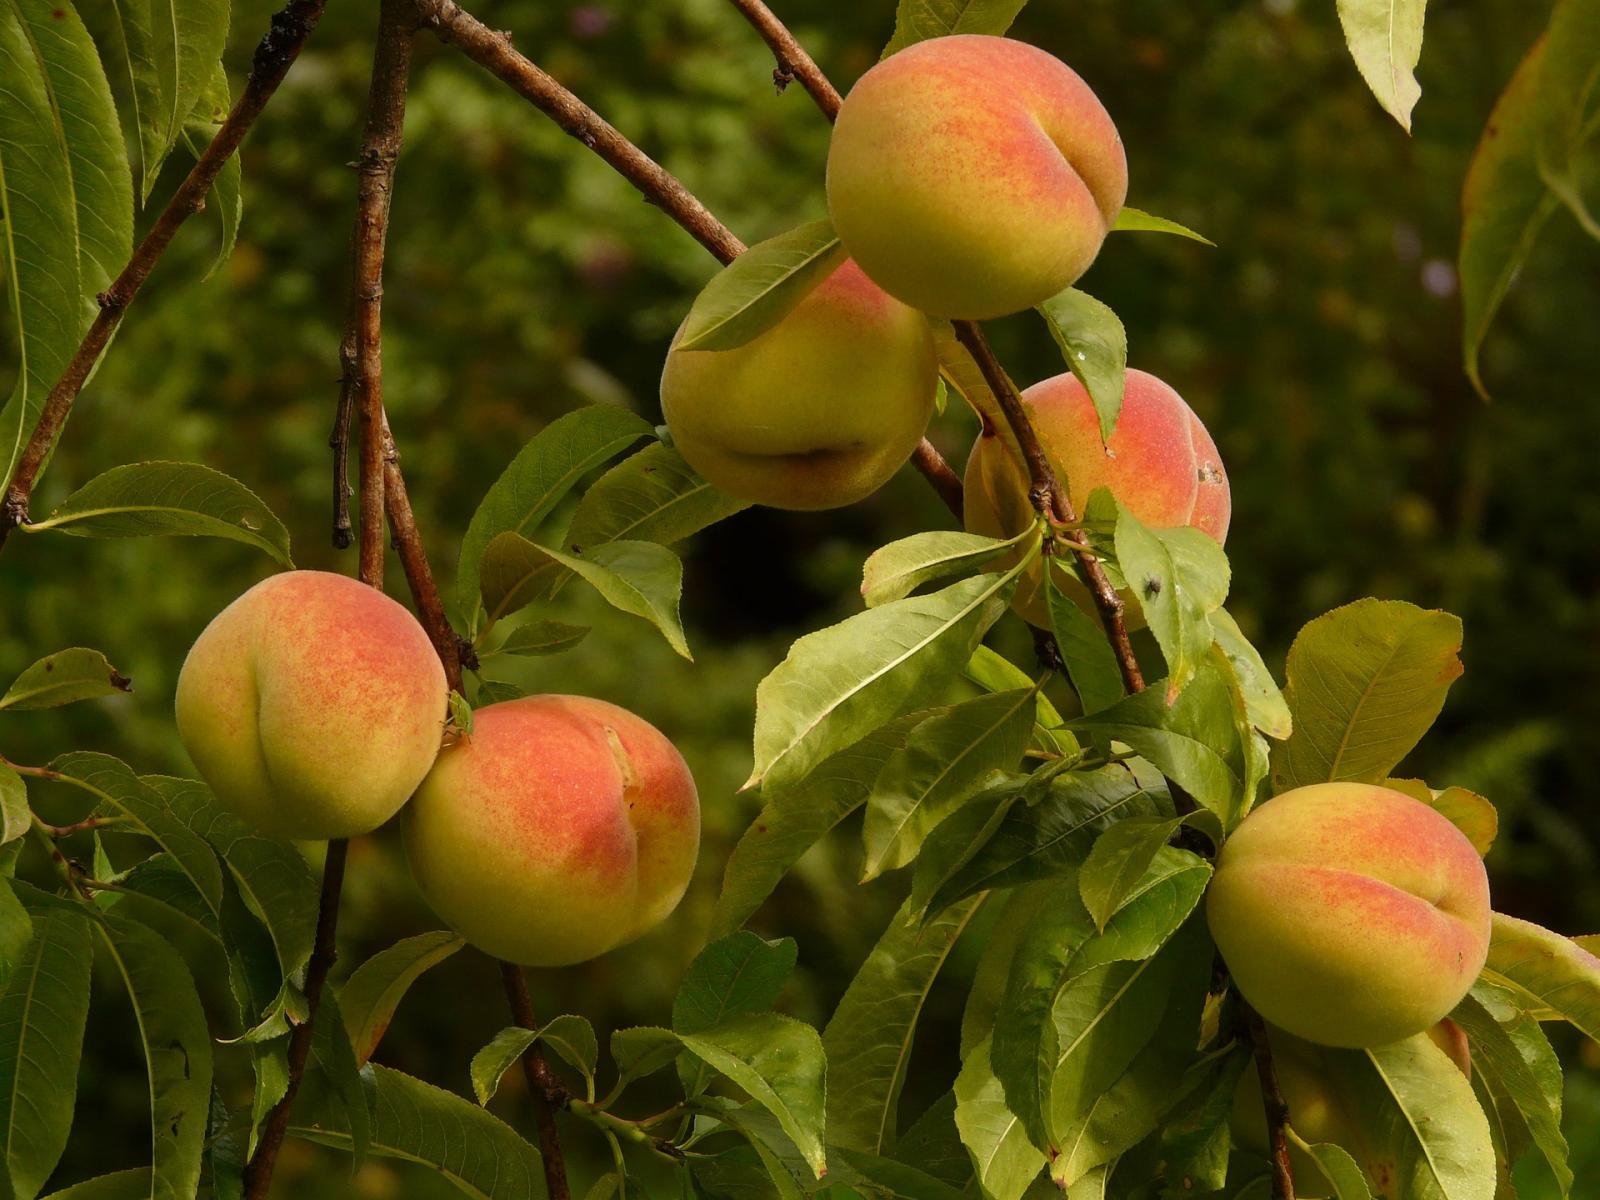 Image of peaches.